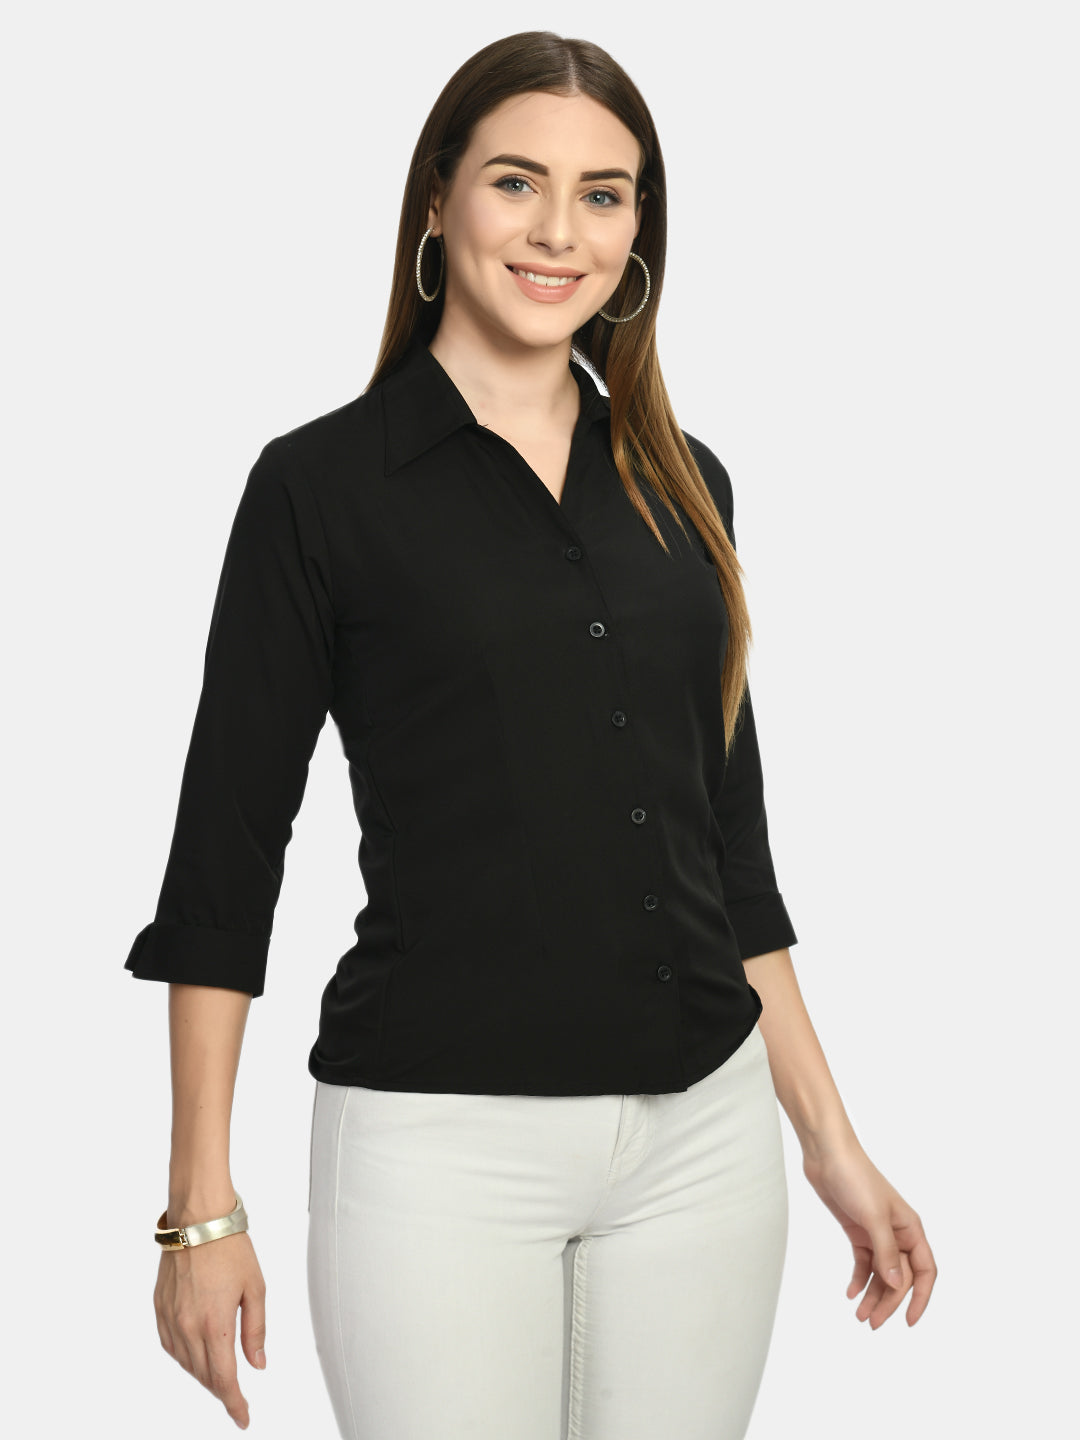 Women's Black Formal Shirt - Wahe-Noor